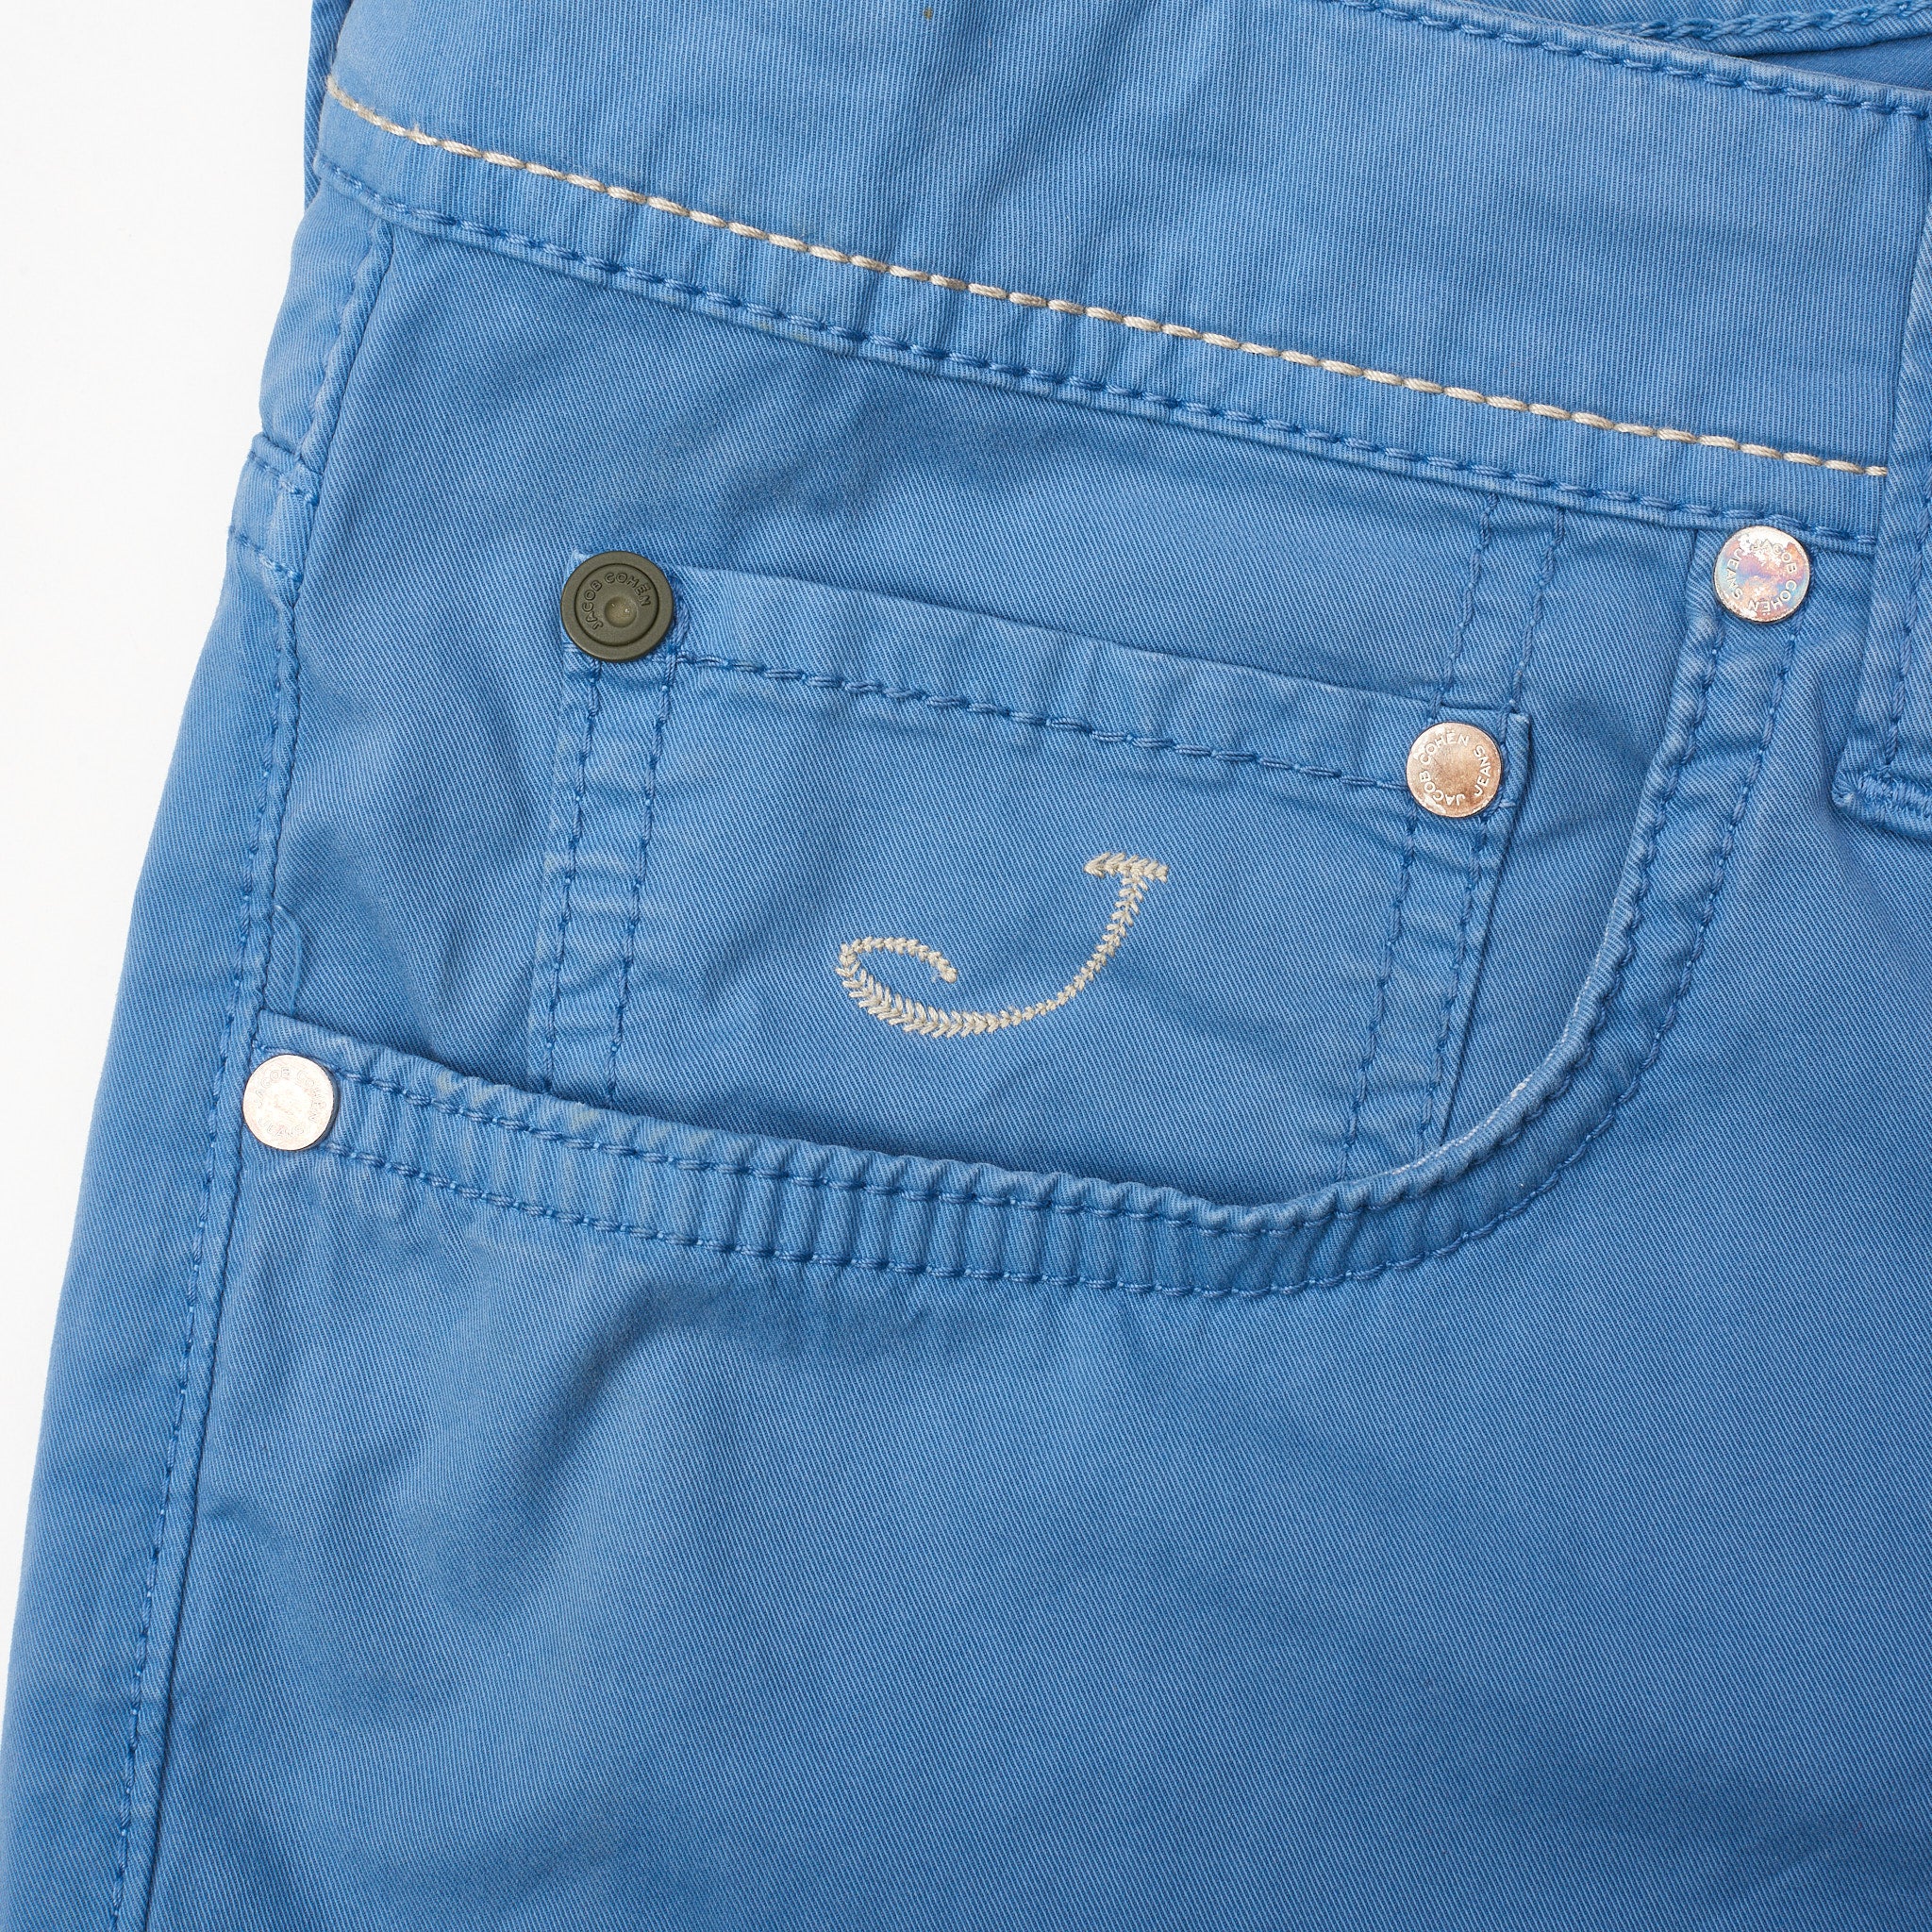 JACOB COHEN PW688 Comfort Blue Cotton Stretch Slim Fit Jeans Pants Size 33